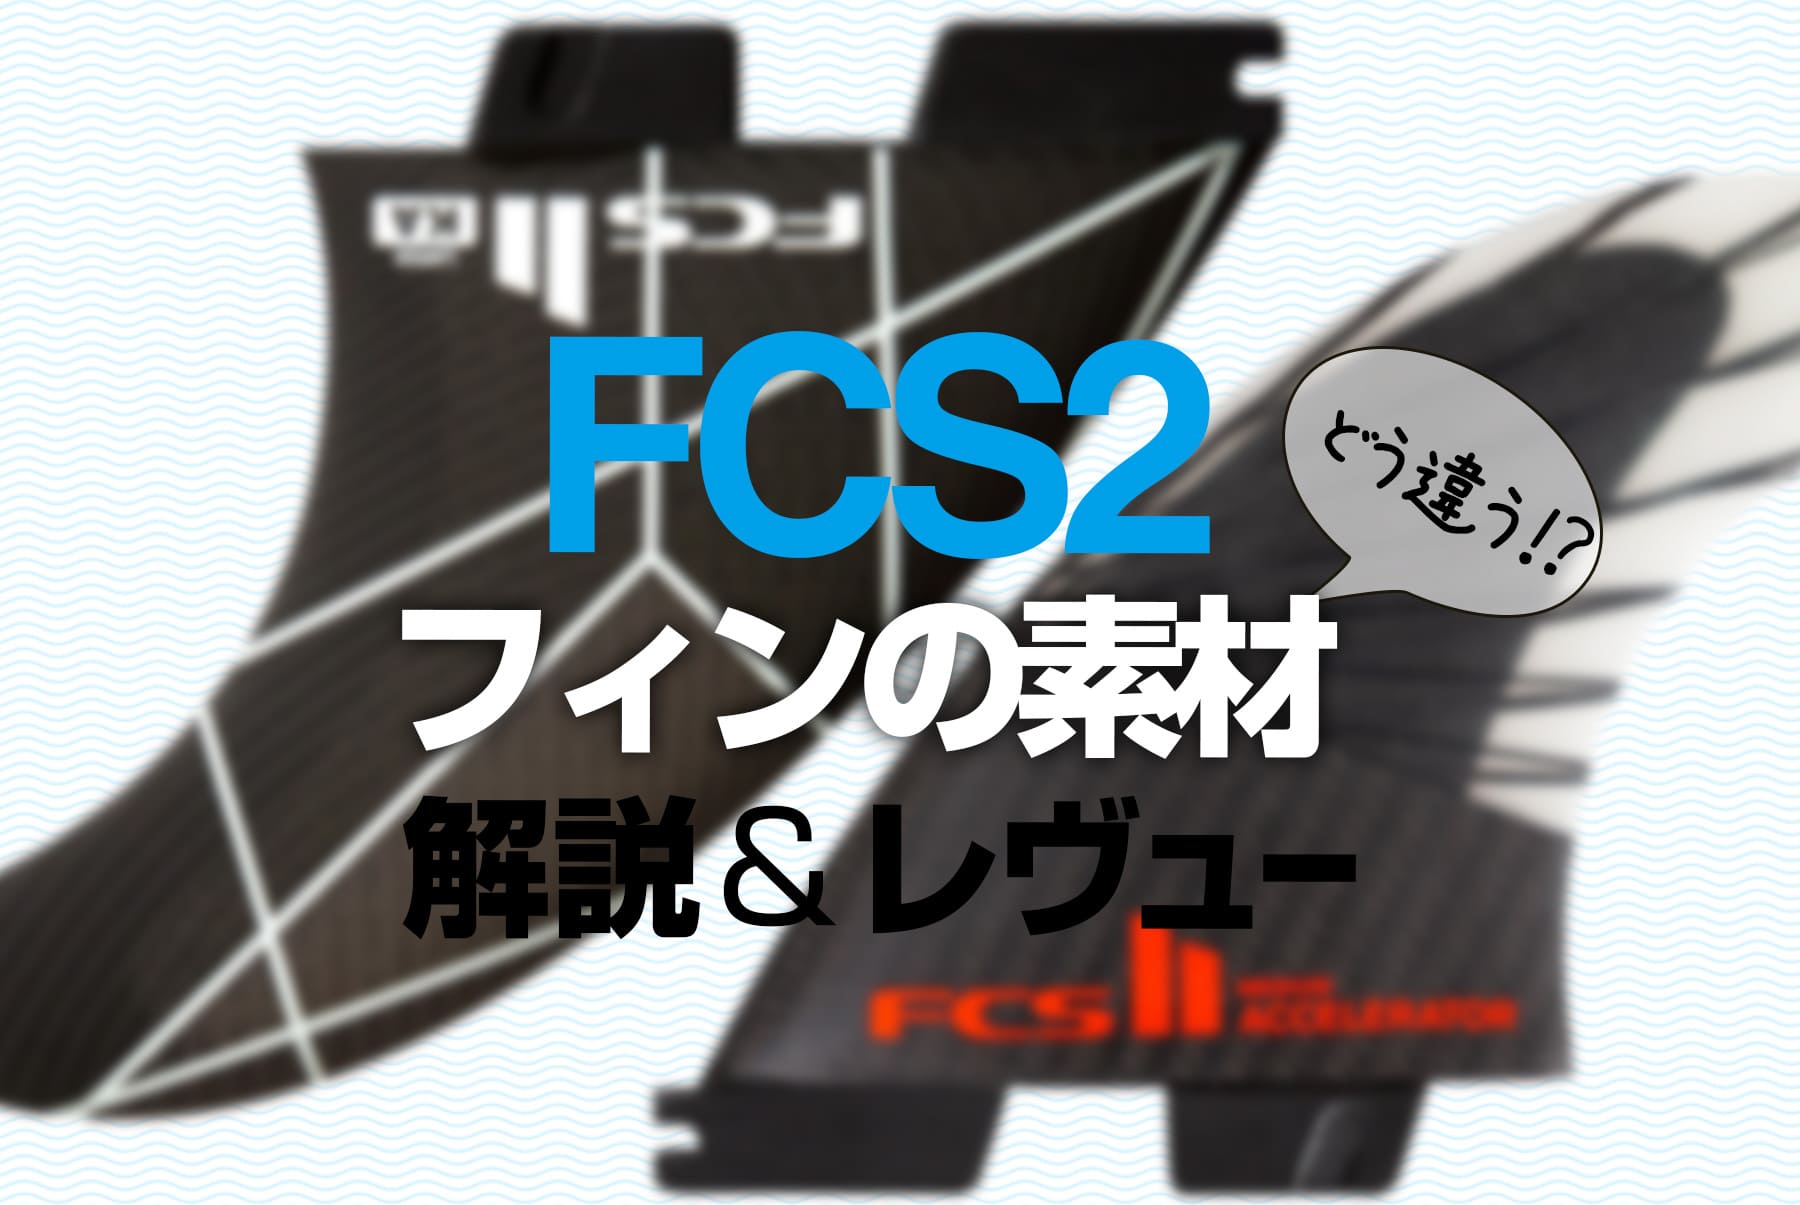 FCSⅡの素材はこう選べ！フィンの素材による違い【FCS2 購入ガイド】